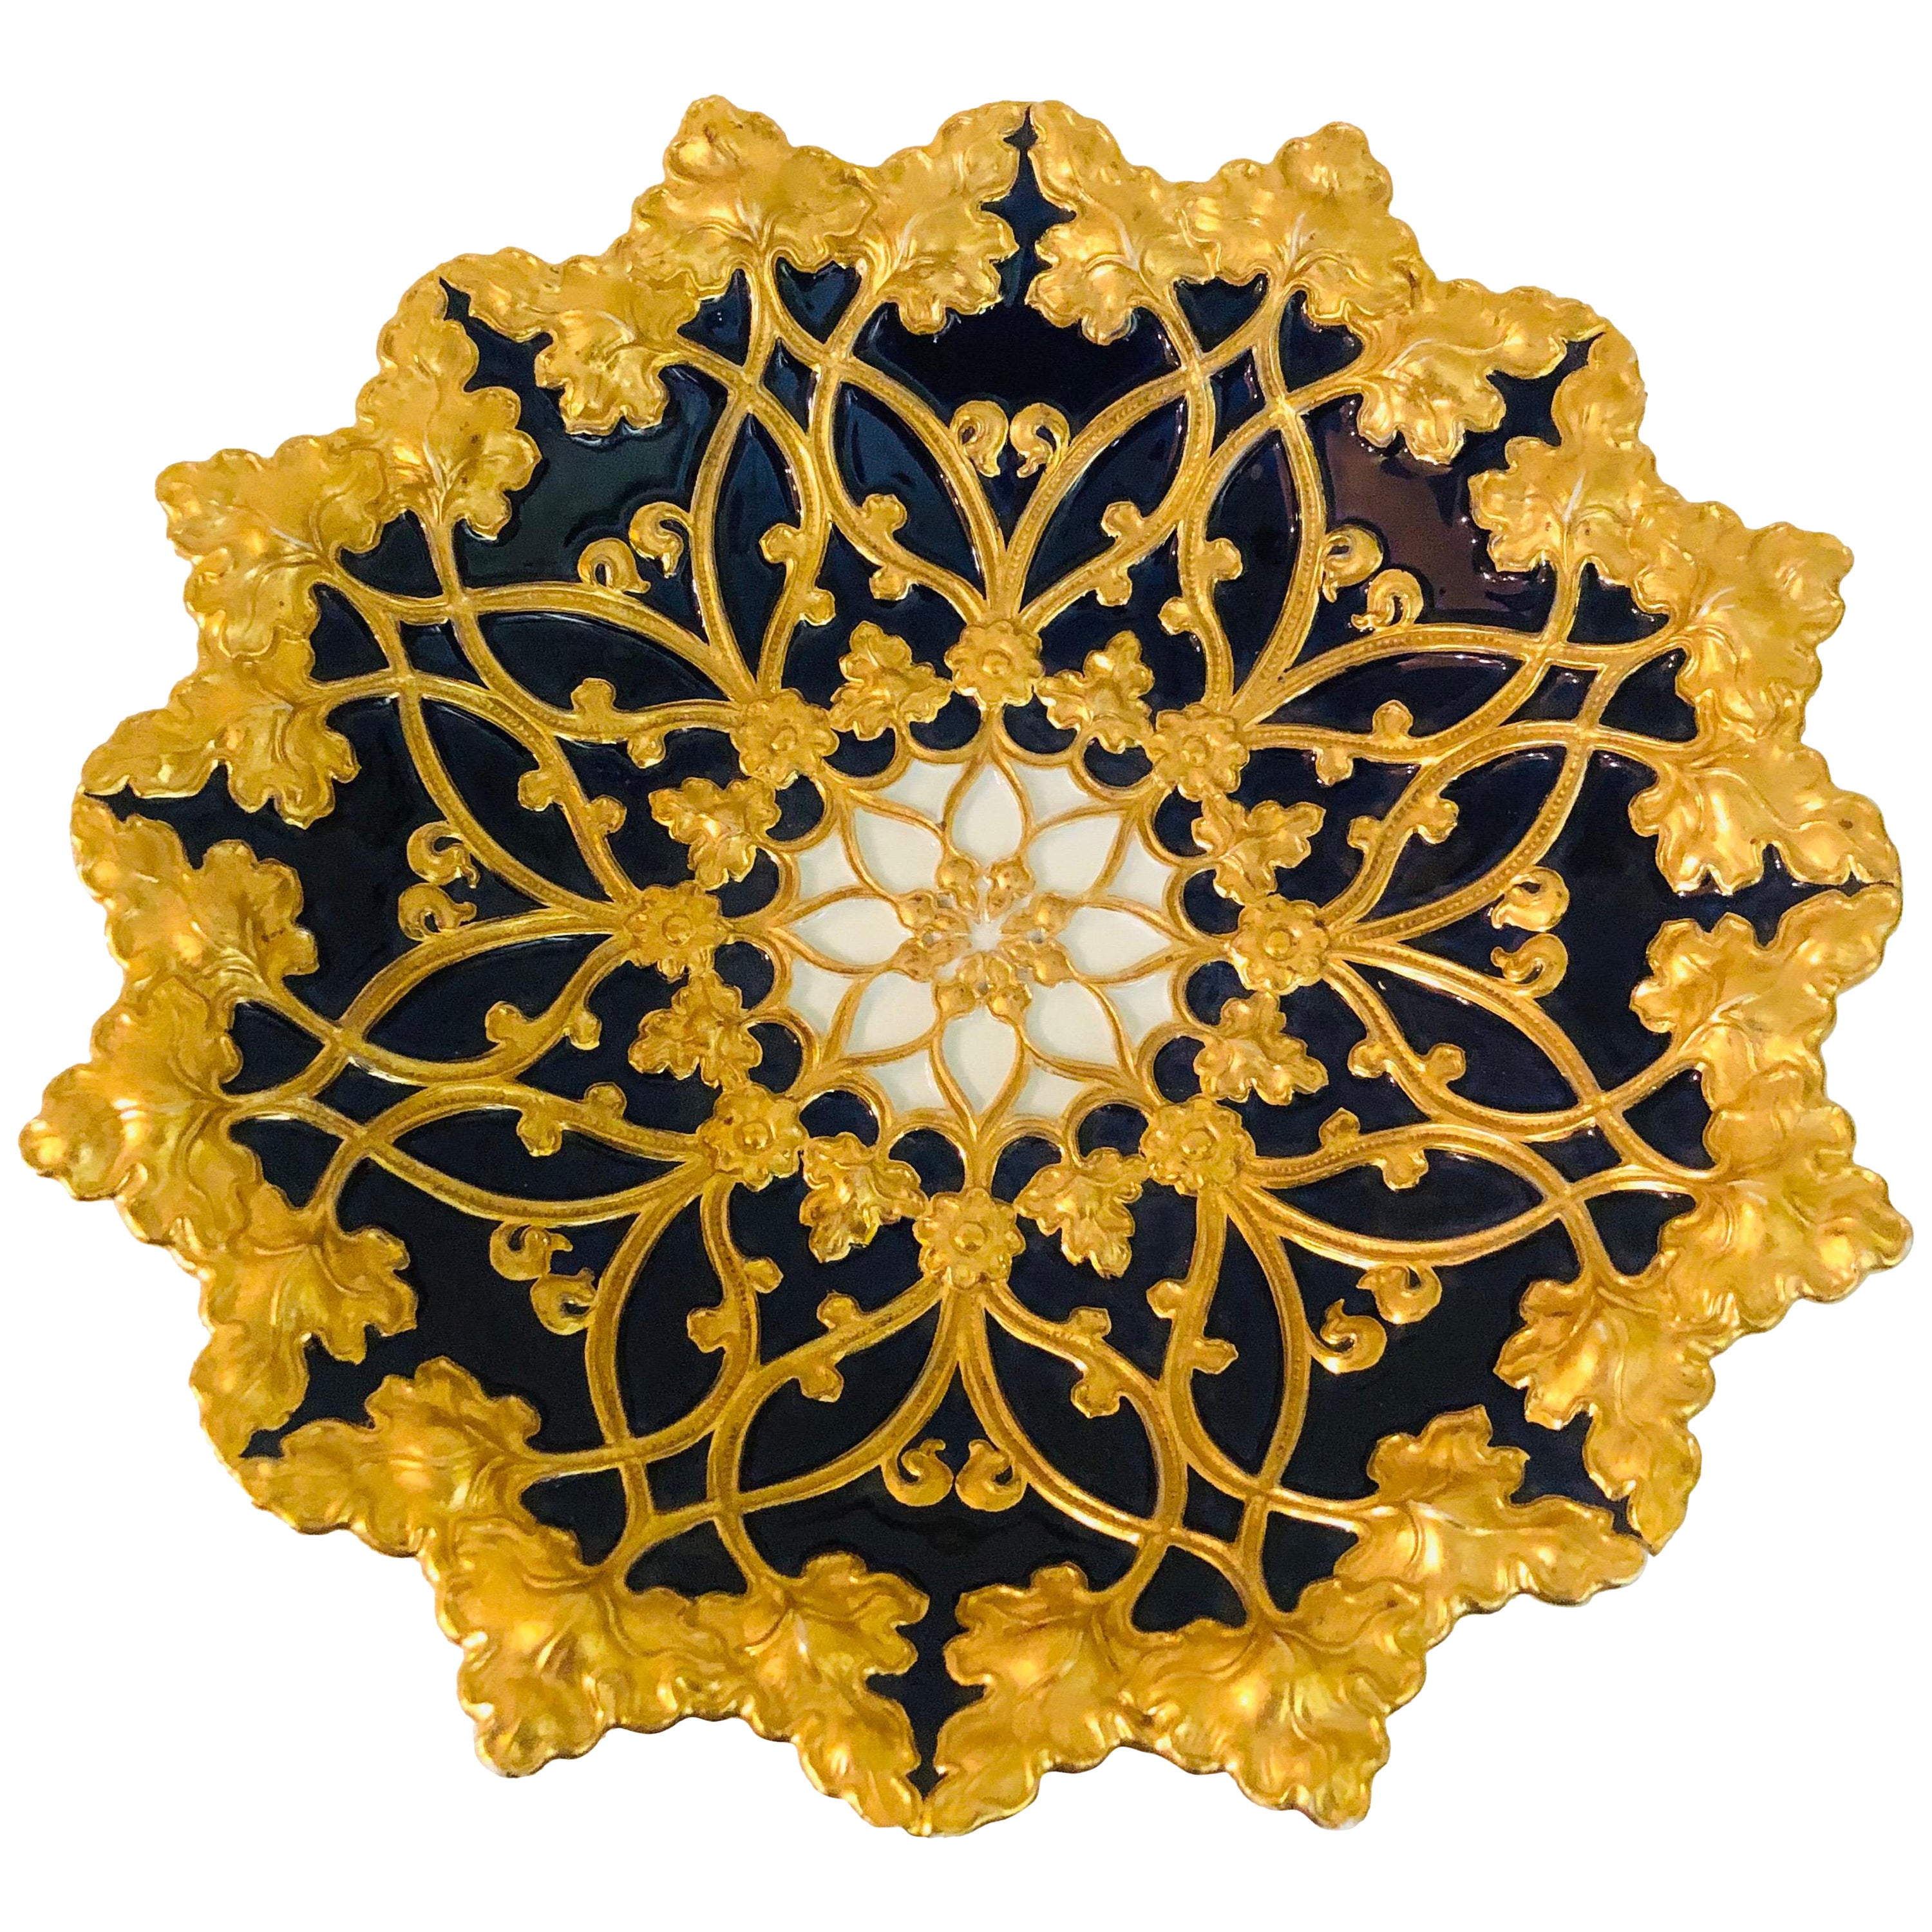 Meissener kobaltfarbener und goldener geriffelter Platzteller mit einer Umrandung aus goldenen Blättern aus den 1890er Jahren